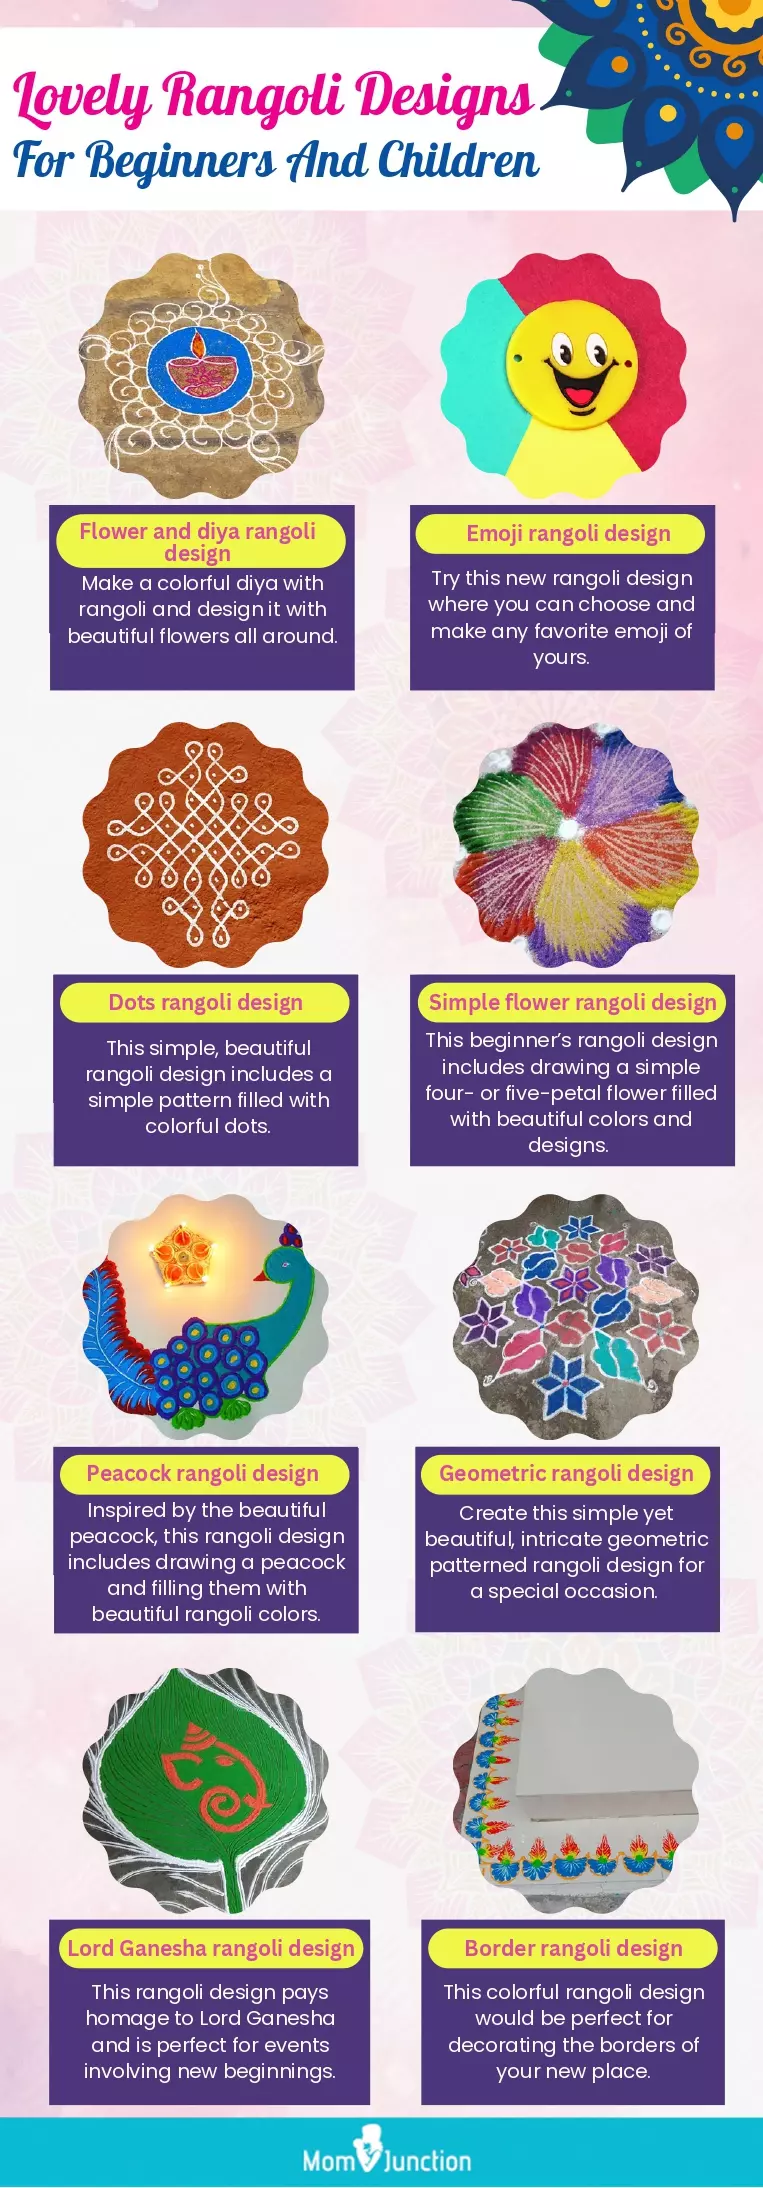 lovely rangoli designs for beginners and children (infographic)